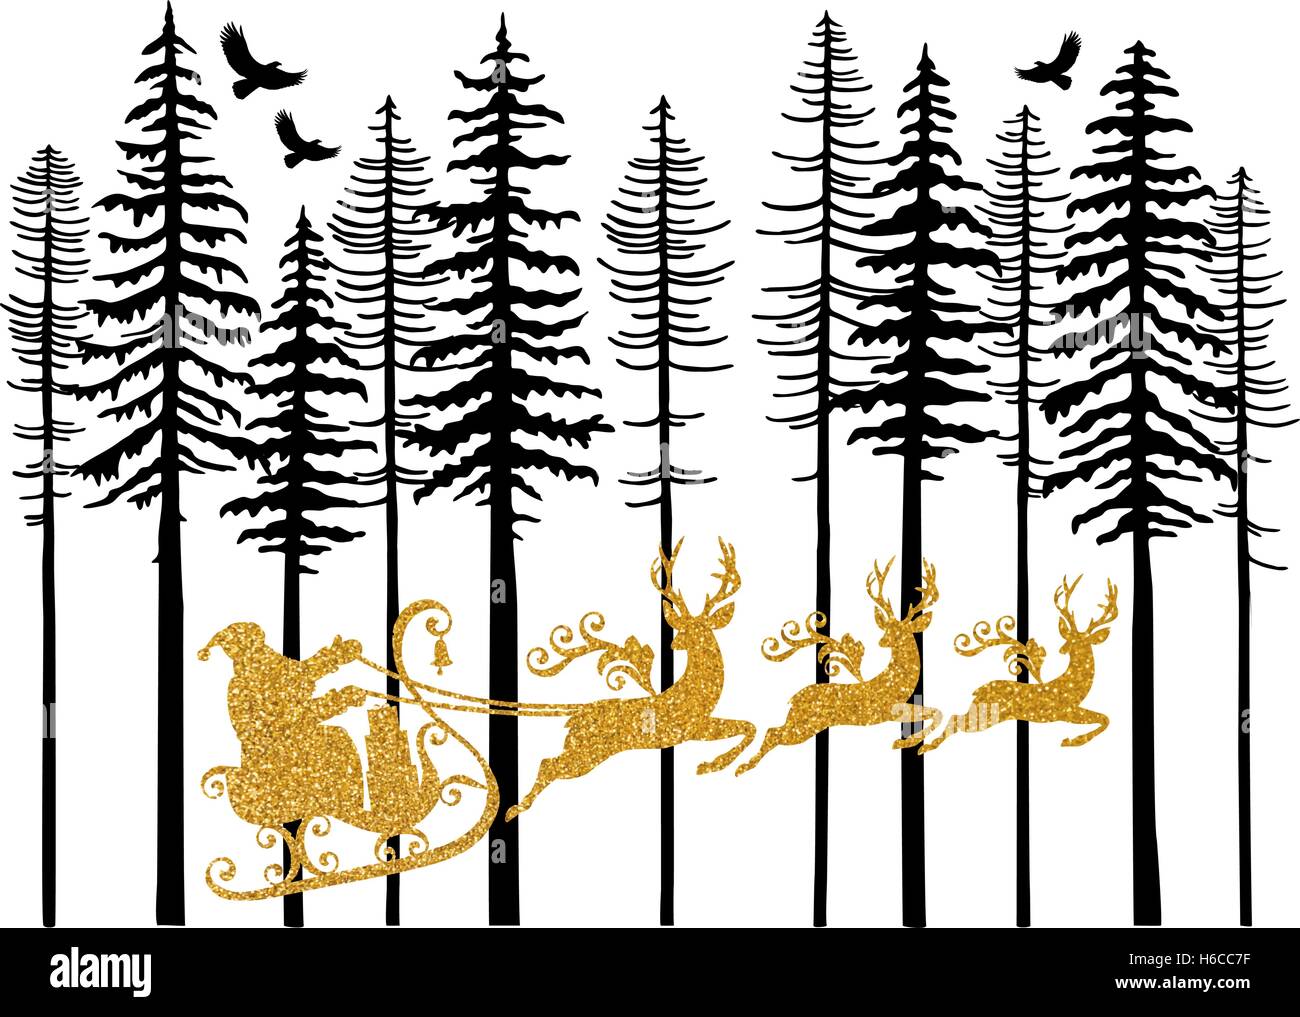 Weihnachtskarte mit goldenen Santa Claus und seinen Schlitten mit fliegenden Rentiere auf weißem Hintergrund, Vektor-illustration Stock Vektor